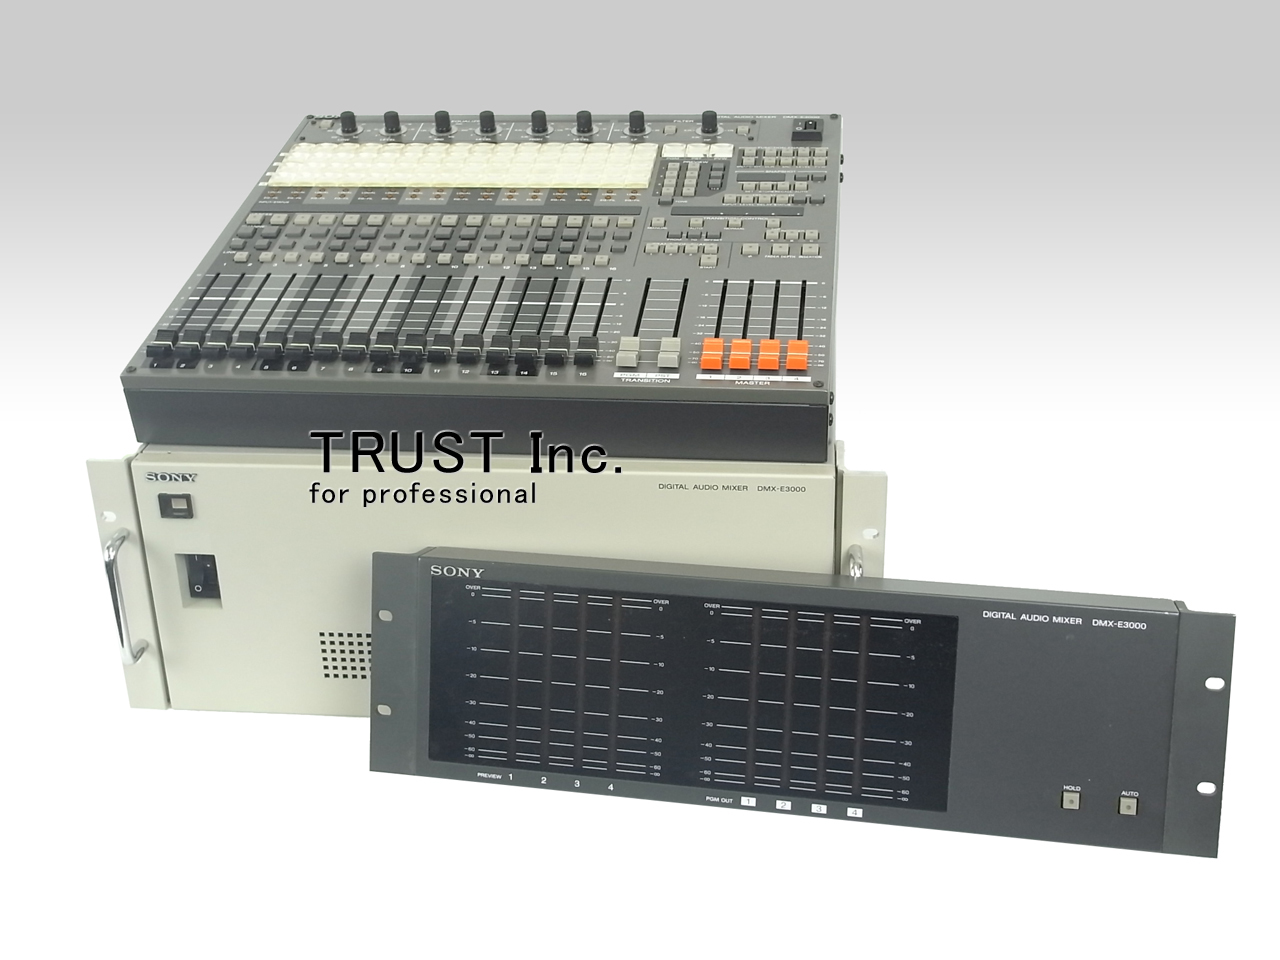 SONYソニー デジタルオーディオミキサー DMX-E3000 本体のみ - 工具